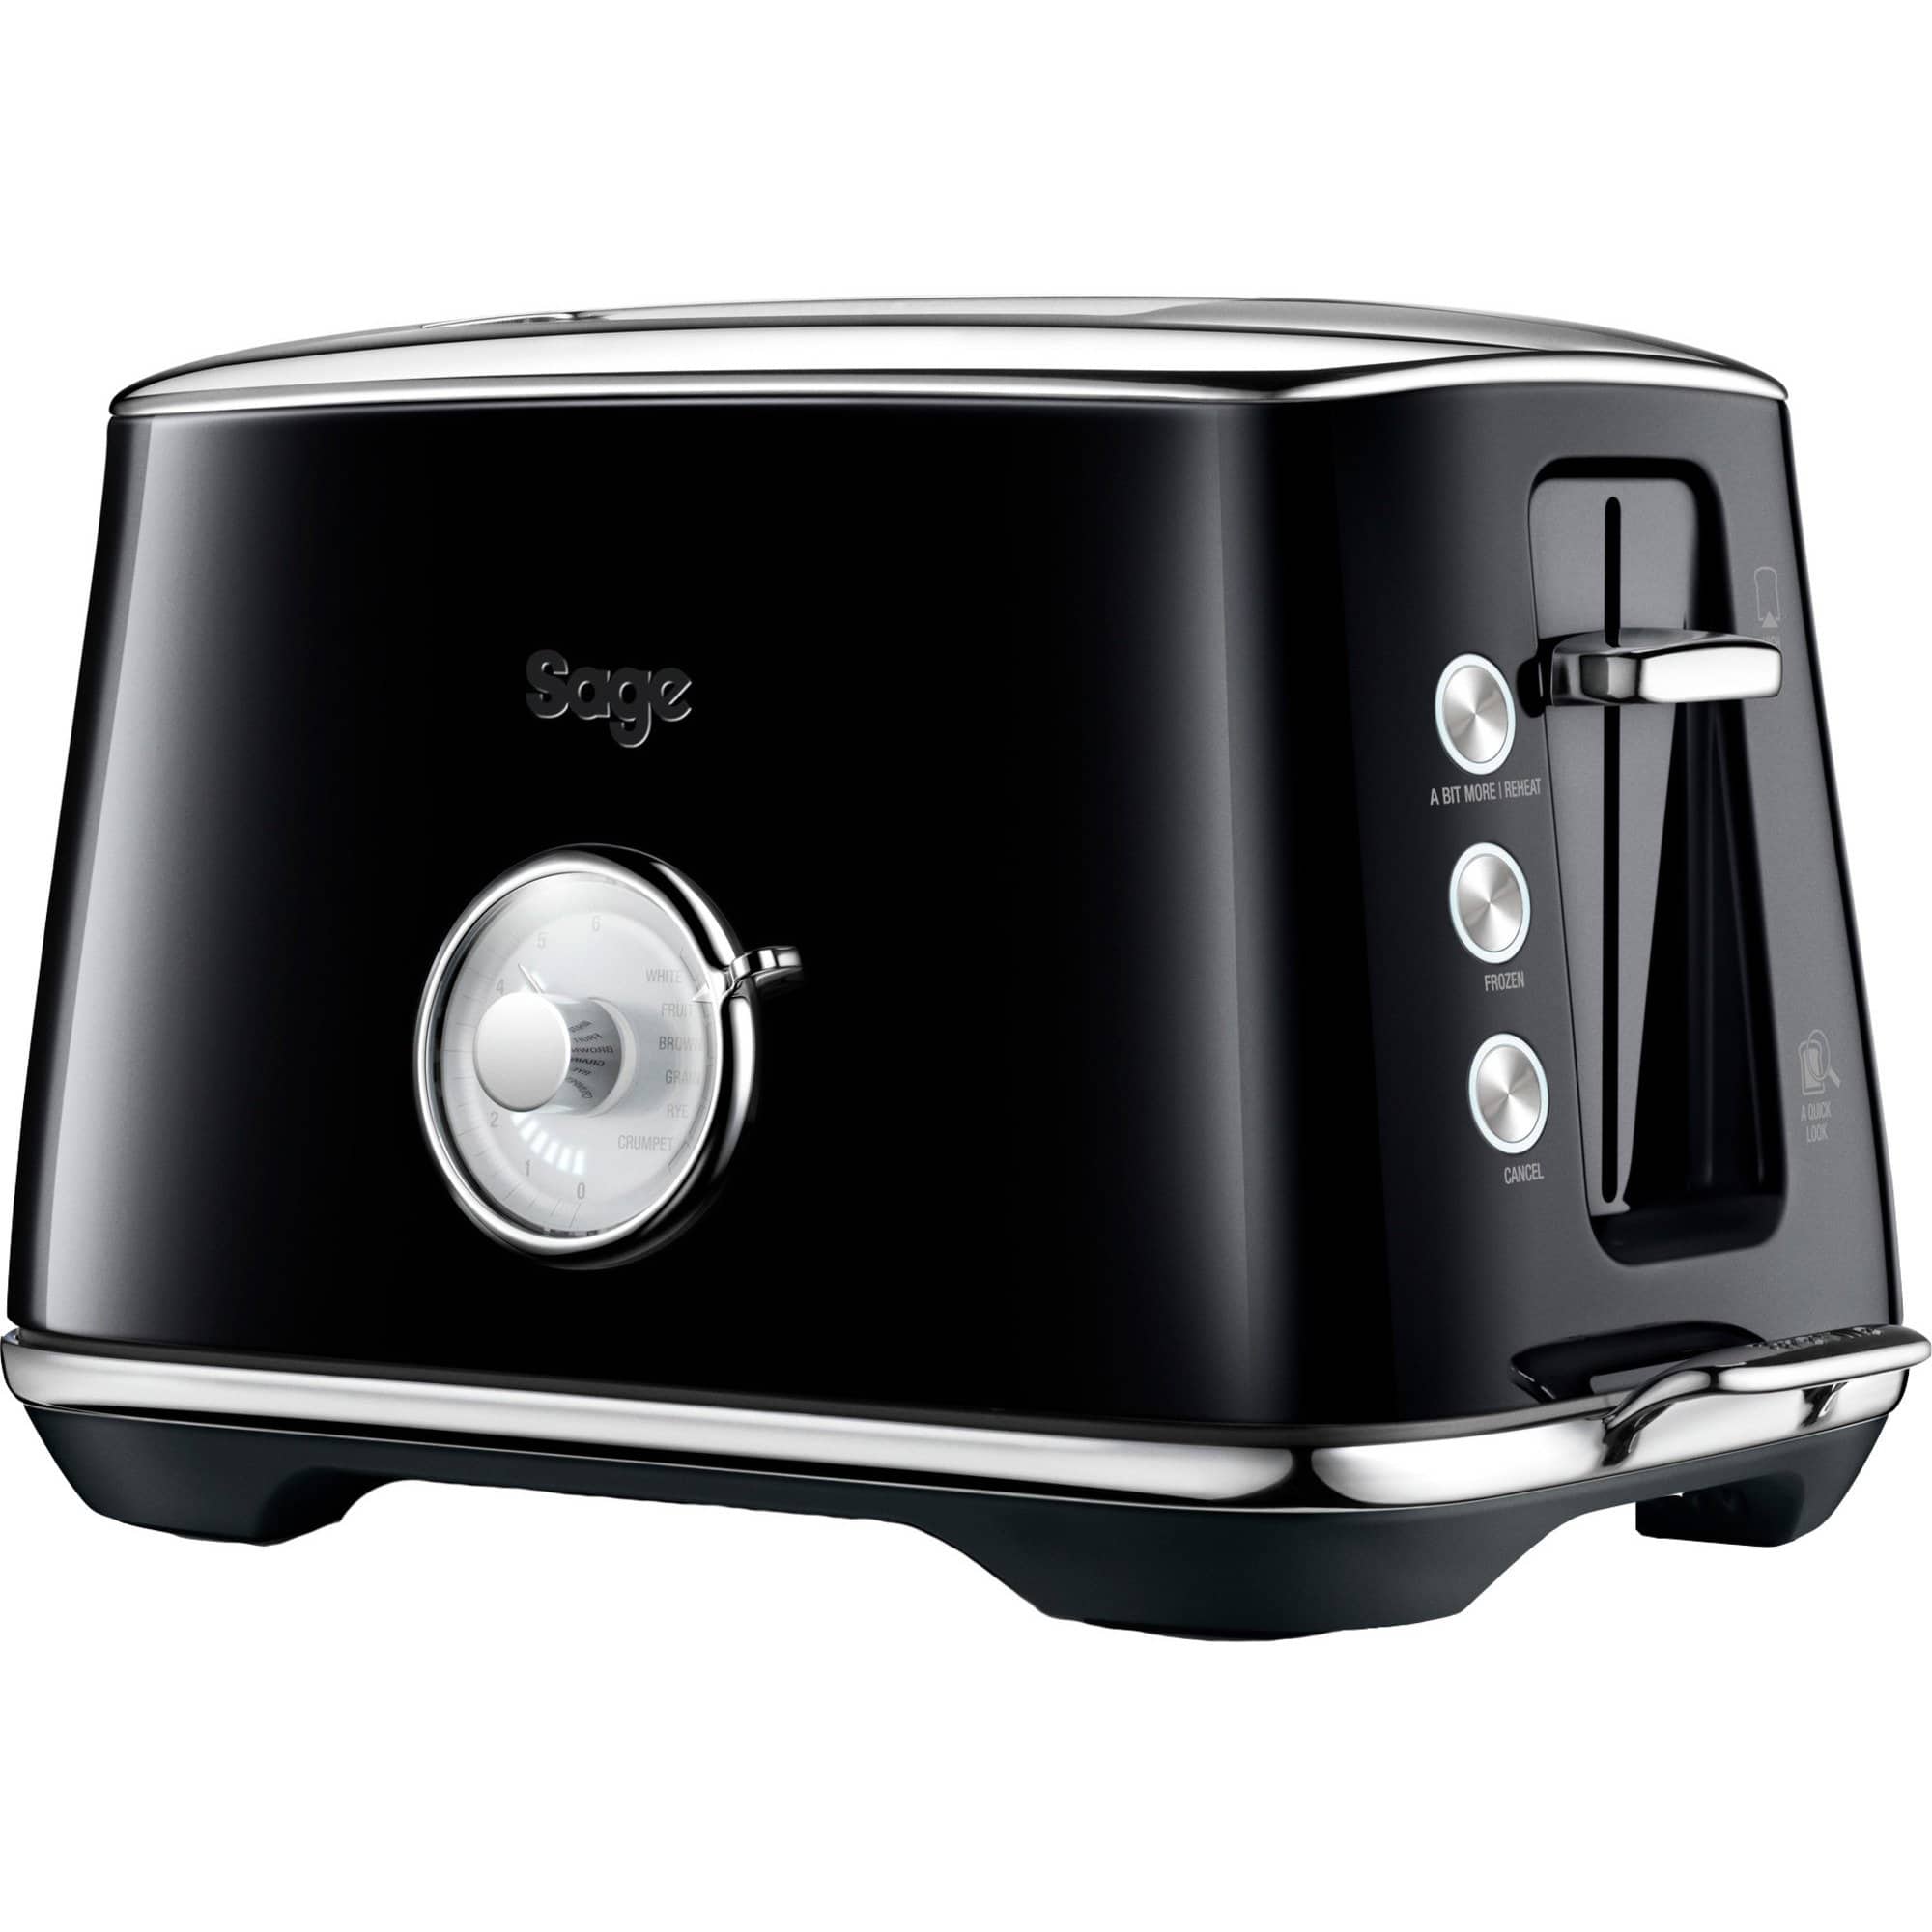 Sage BTA735 The Luxe Toast Select toaster, sortbedste i test blender